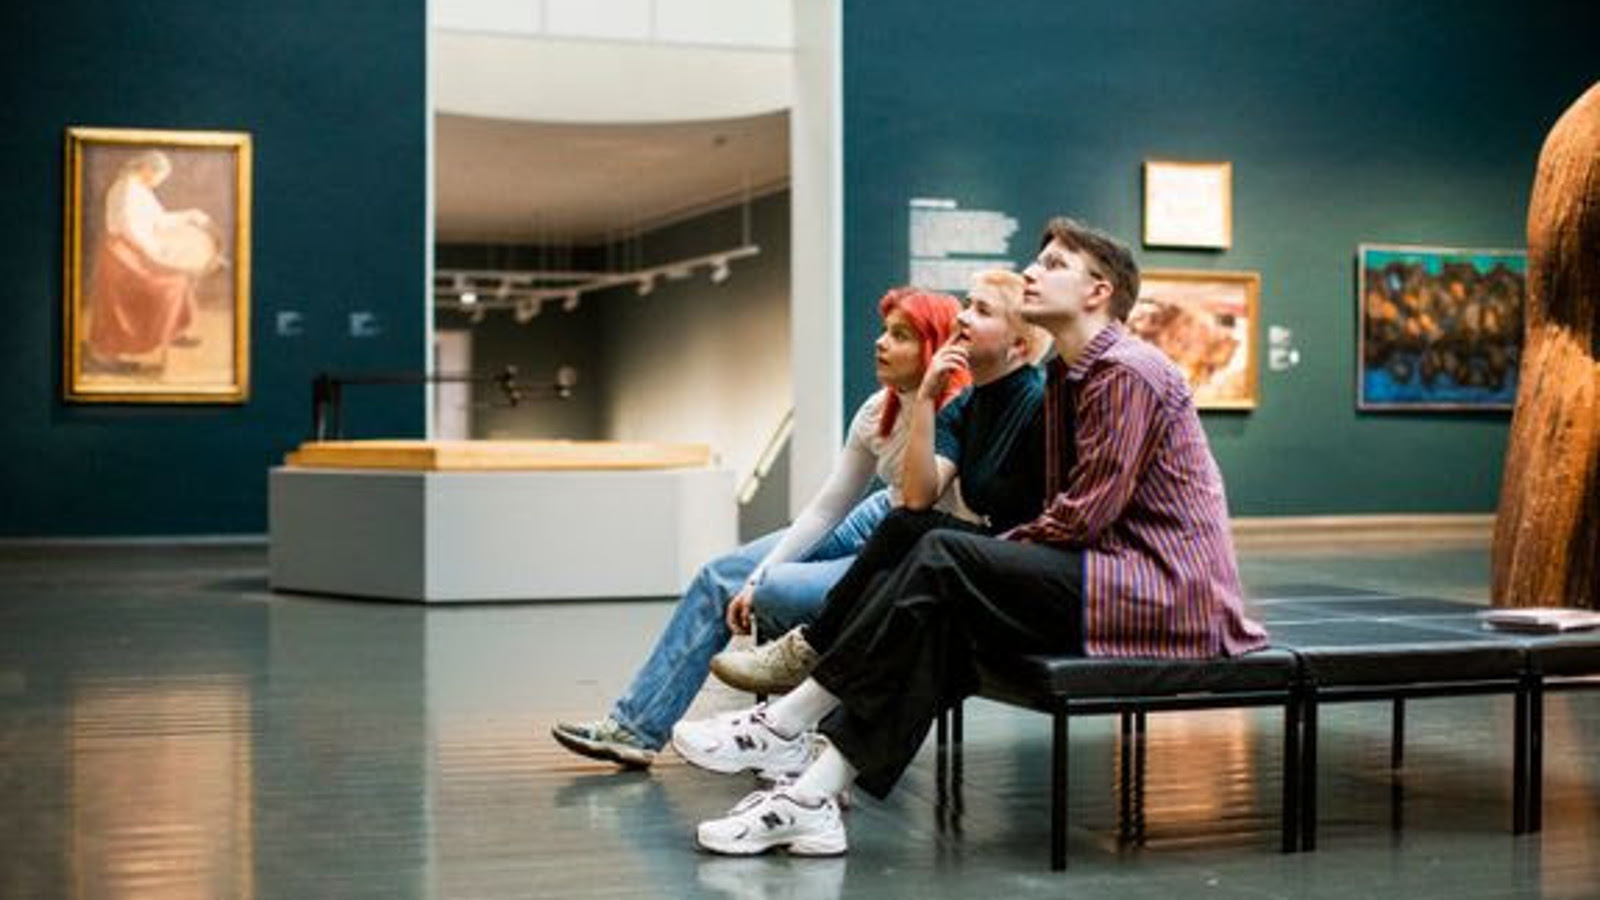 Kuvassa on kaksi nuorta naista ja yksi mies istumassa taidemuseon penkllä ja he ovat kuvassa sivuttain.  Vasemmalla taaempana on tumma seinä, jossa on naista maalaisvaatteessa oleva nainen.  Oviaukon toisella puolella on lisää tauluja.